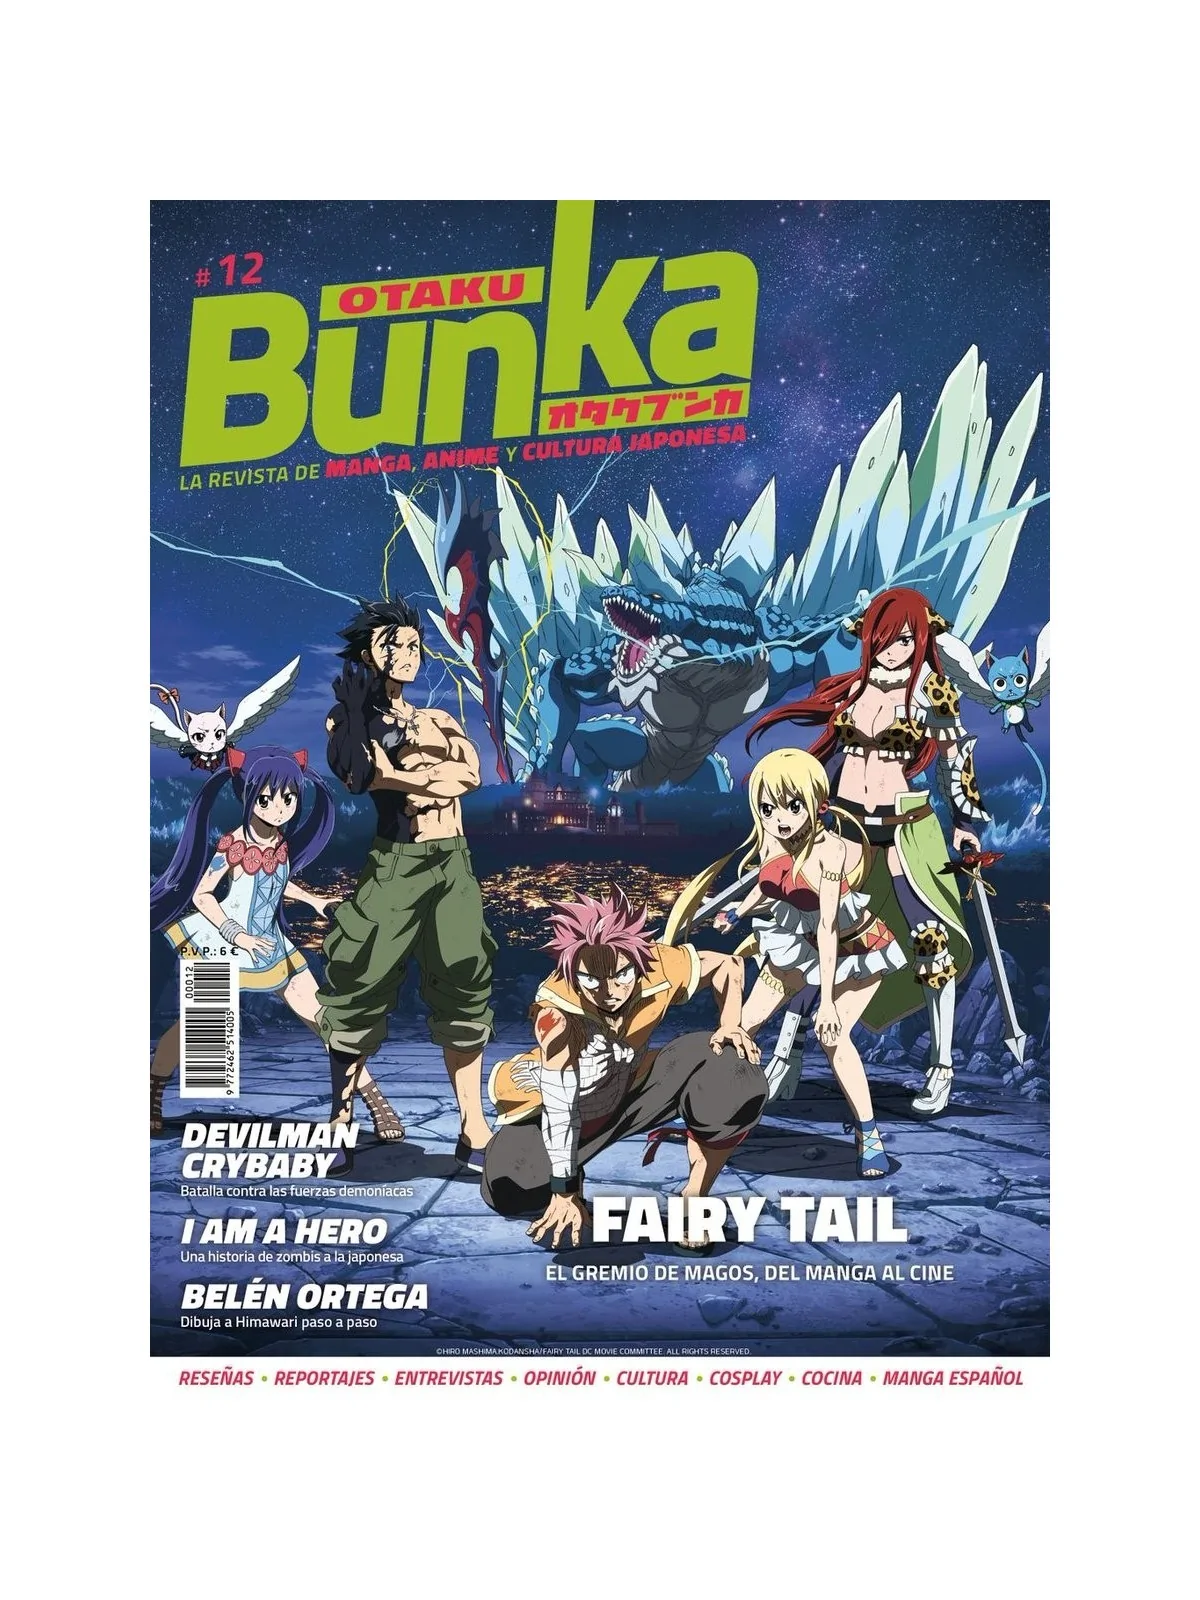 Comprar Otaku Bunka 12 barato al mejor precio 5,70 € de Panini Comics